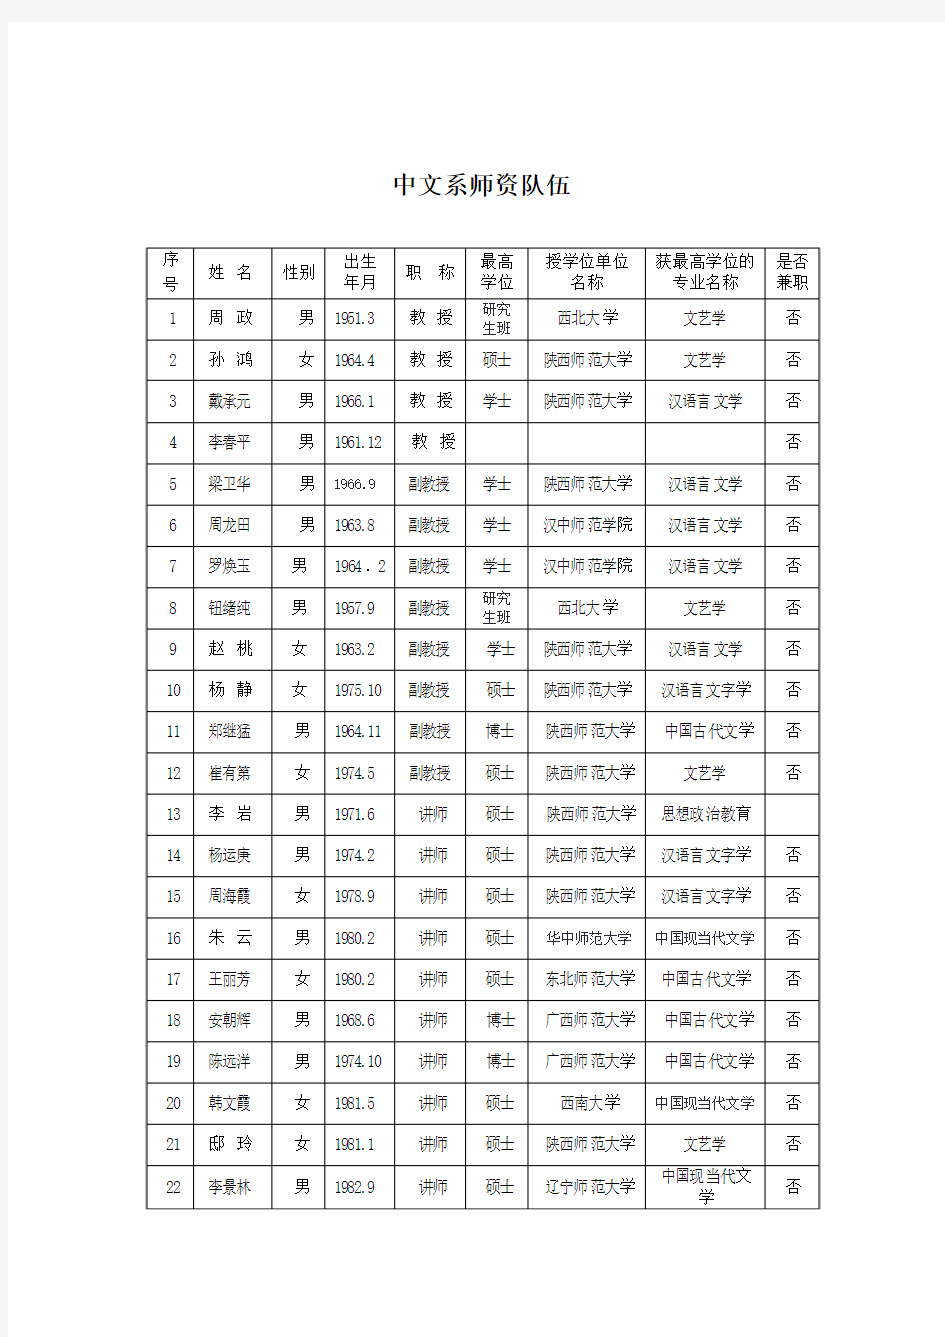 安康学院中文系师资队伍情况一览表